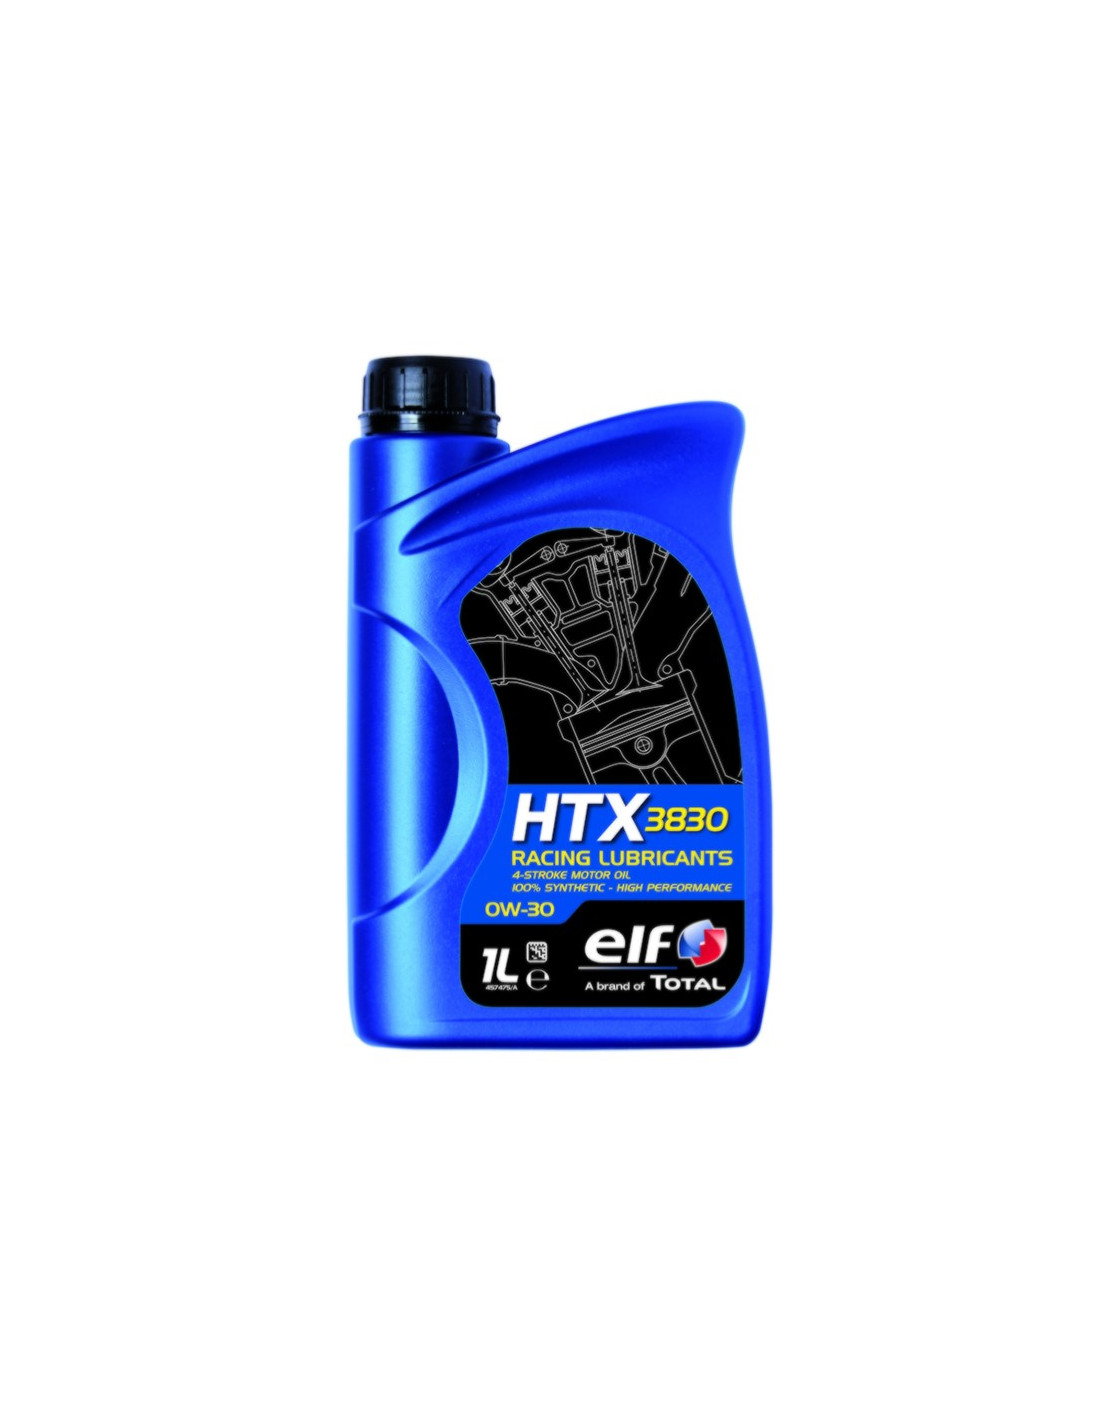 Comprar ELF HTX 3830 0W-30 Competición | Compralubricantes.com